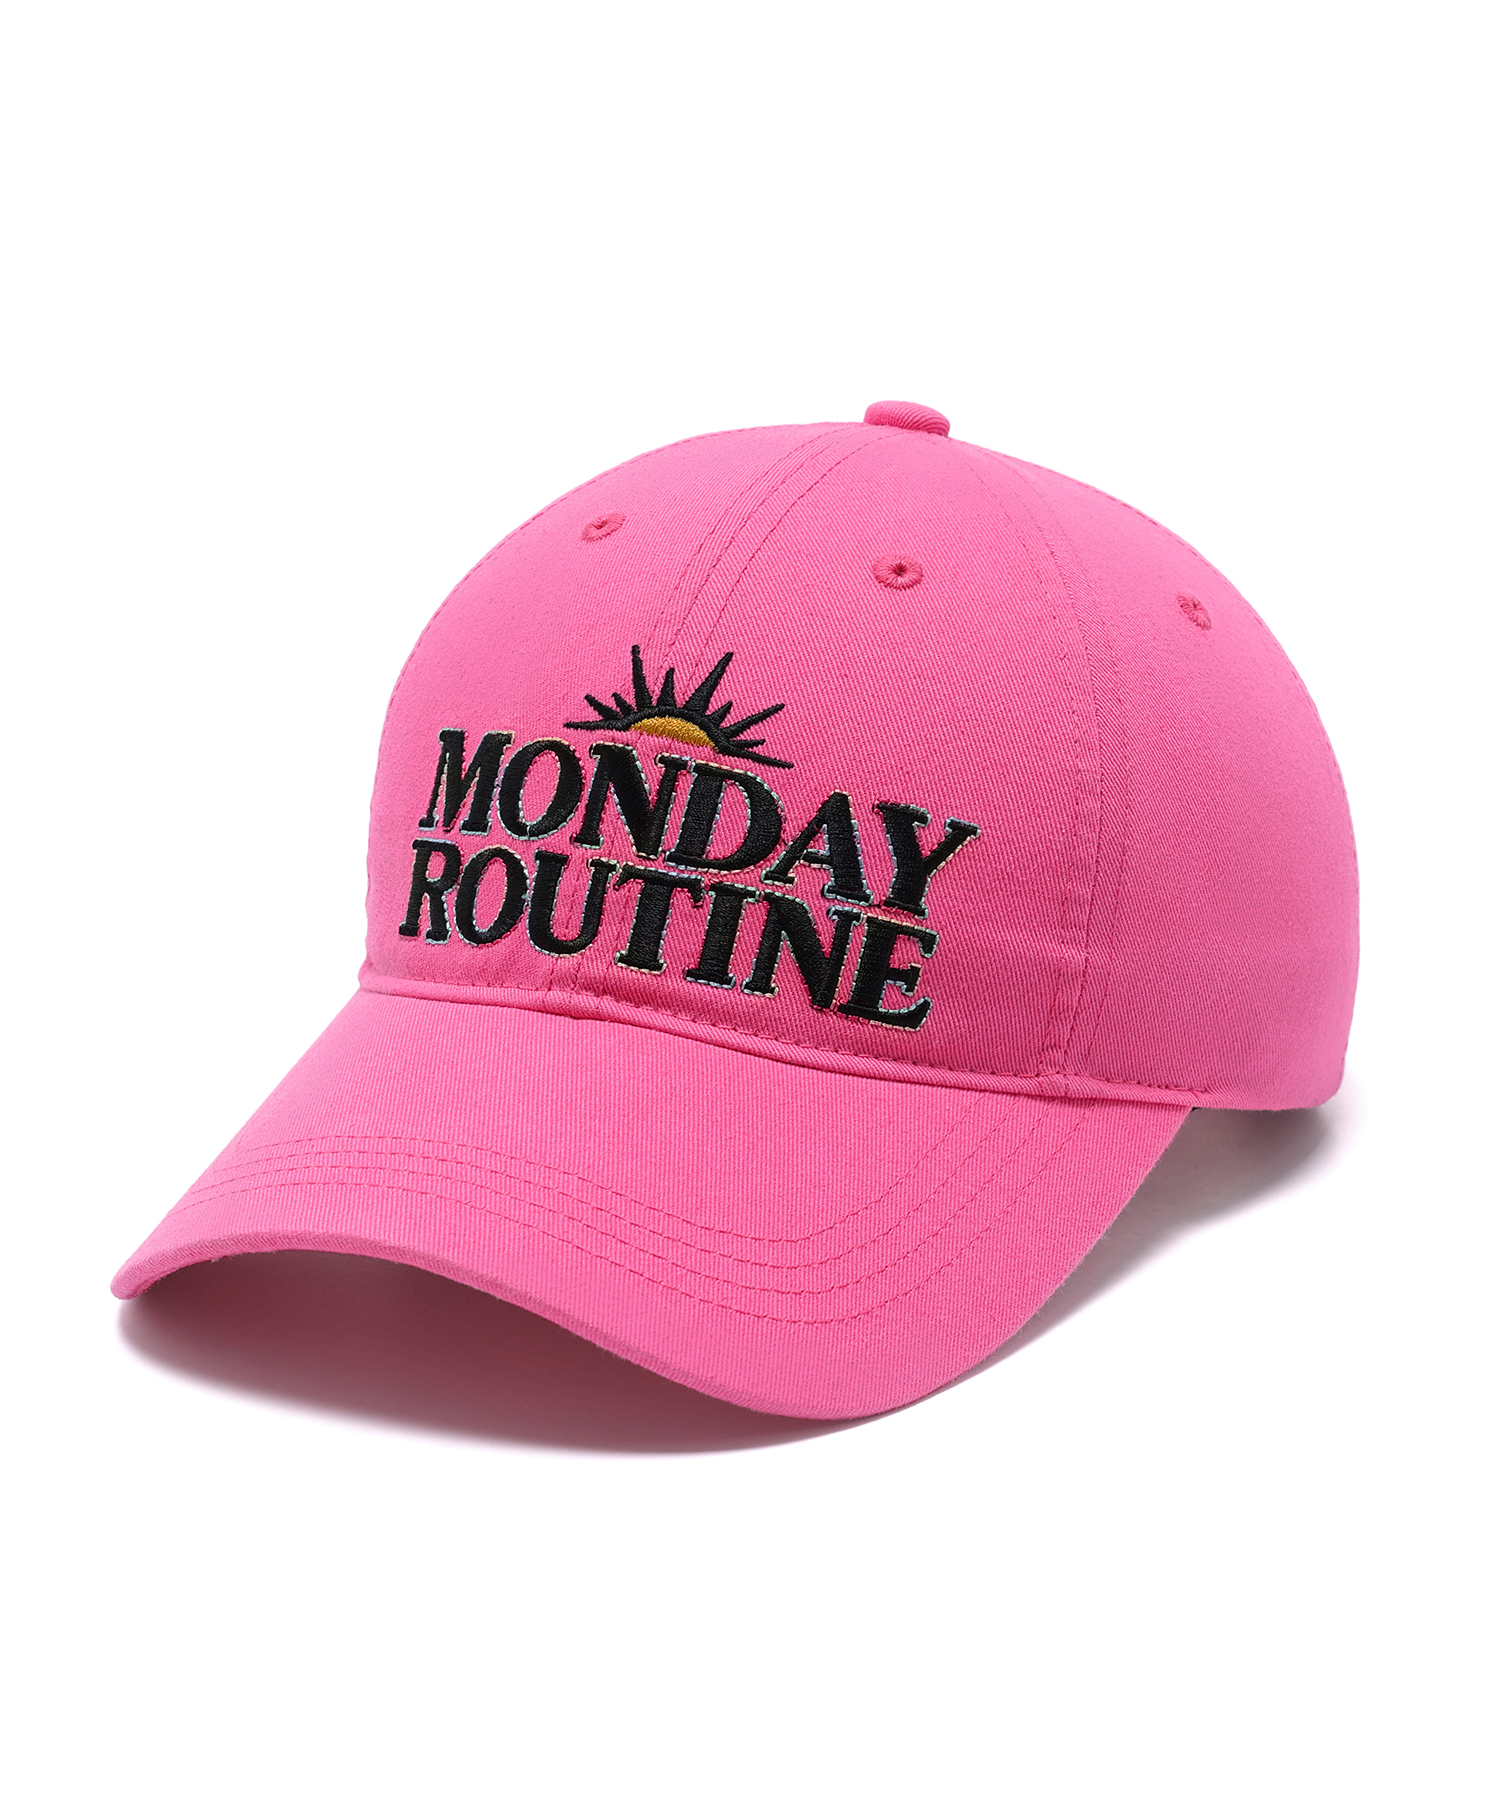 MONDAY ROUTINE COLOR STITCH CAP PINK